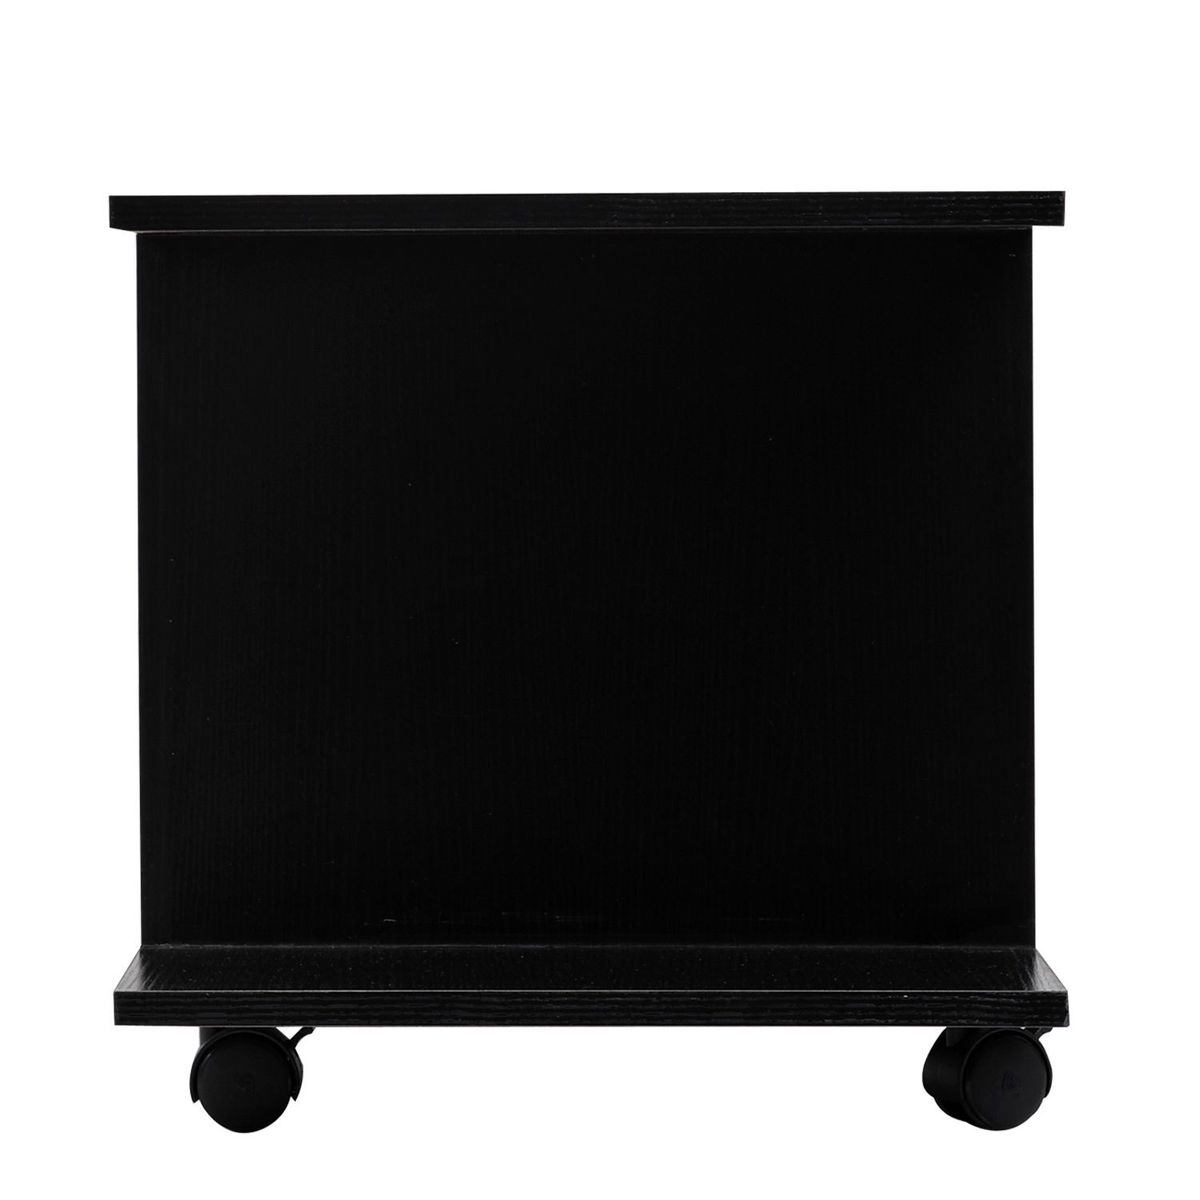 Meuble Tv Homcom Table Basse A Roulettes En Panneaux De Particules Noir Contemporain Aspect Bois